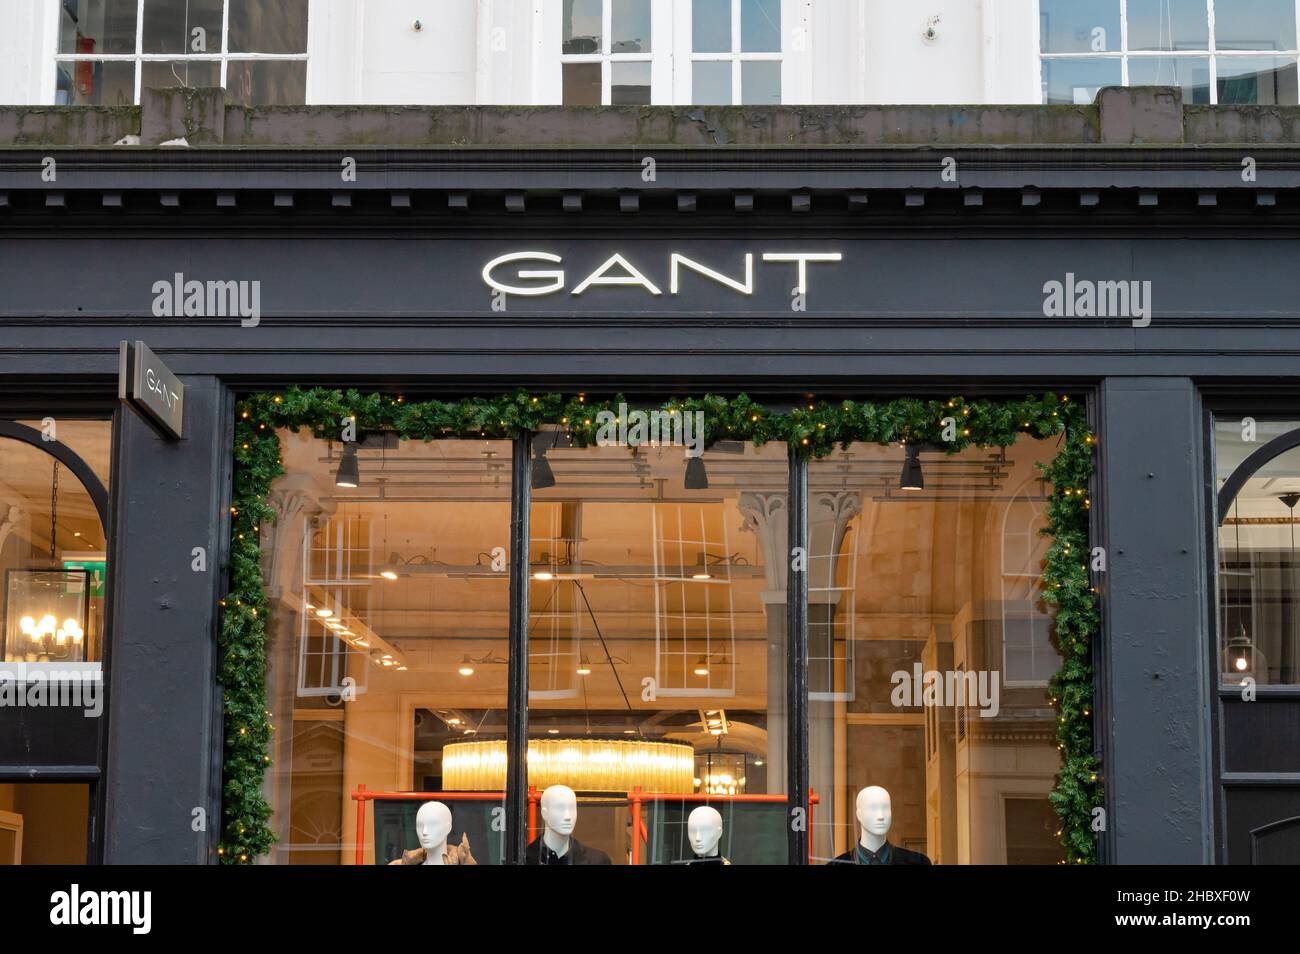 Édimbourg, Écosse - 21 novembre 2021 : le panneau pour le magasin de vêtements Gant à Édimbourg. Banque D'Images